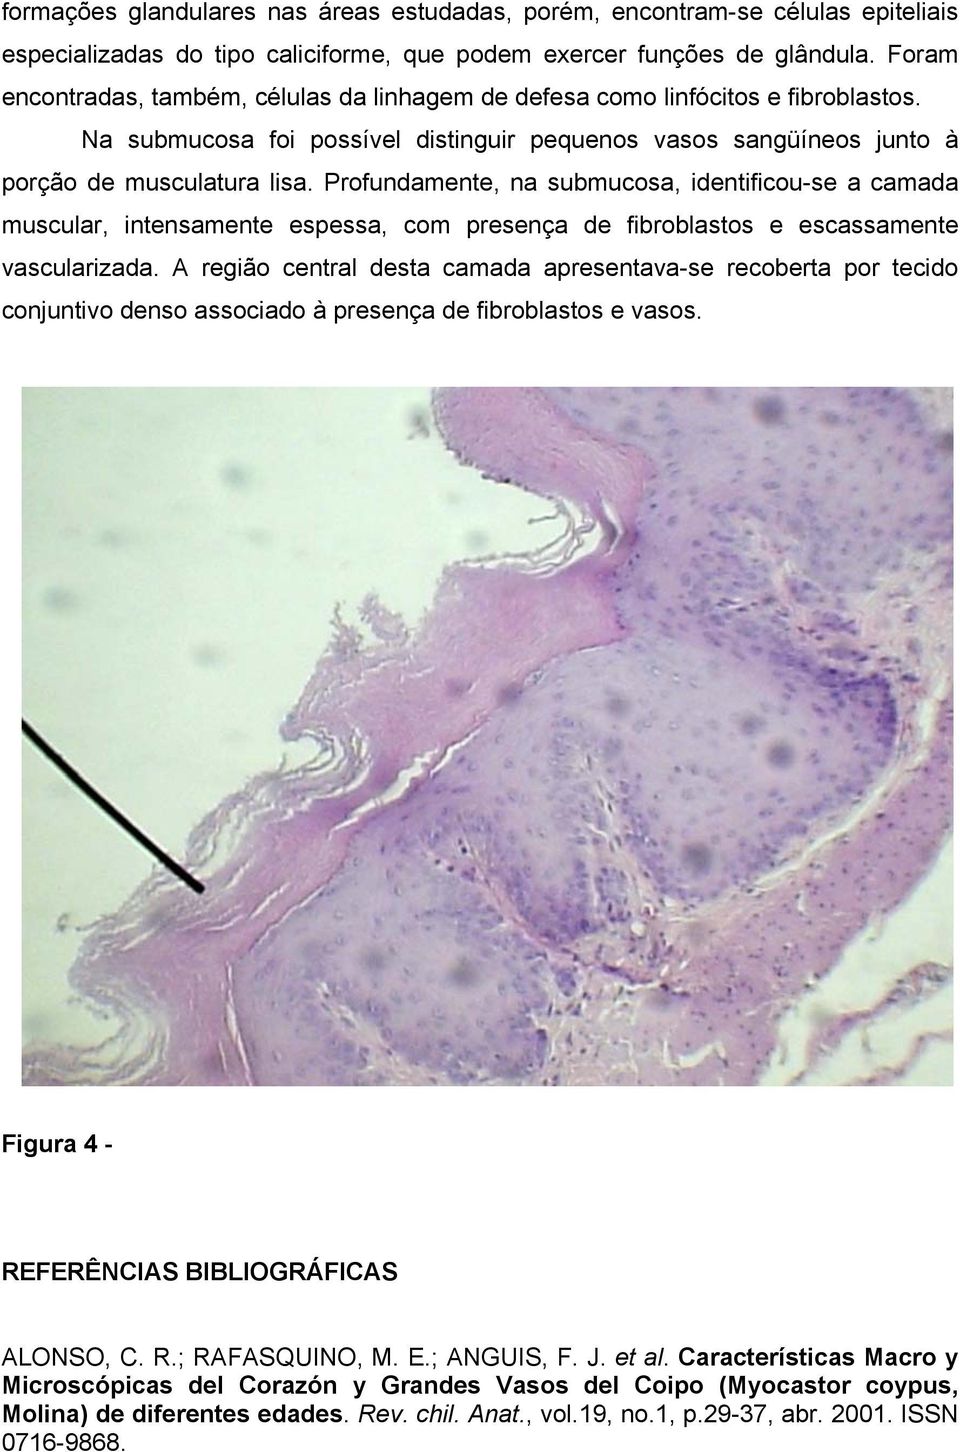 Profundamente, na submucosa, identificou-se a camada muscular, intensamente espessa, com presença de fibroblastos e escassamente vascularizada.